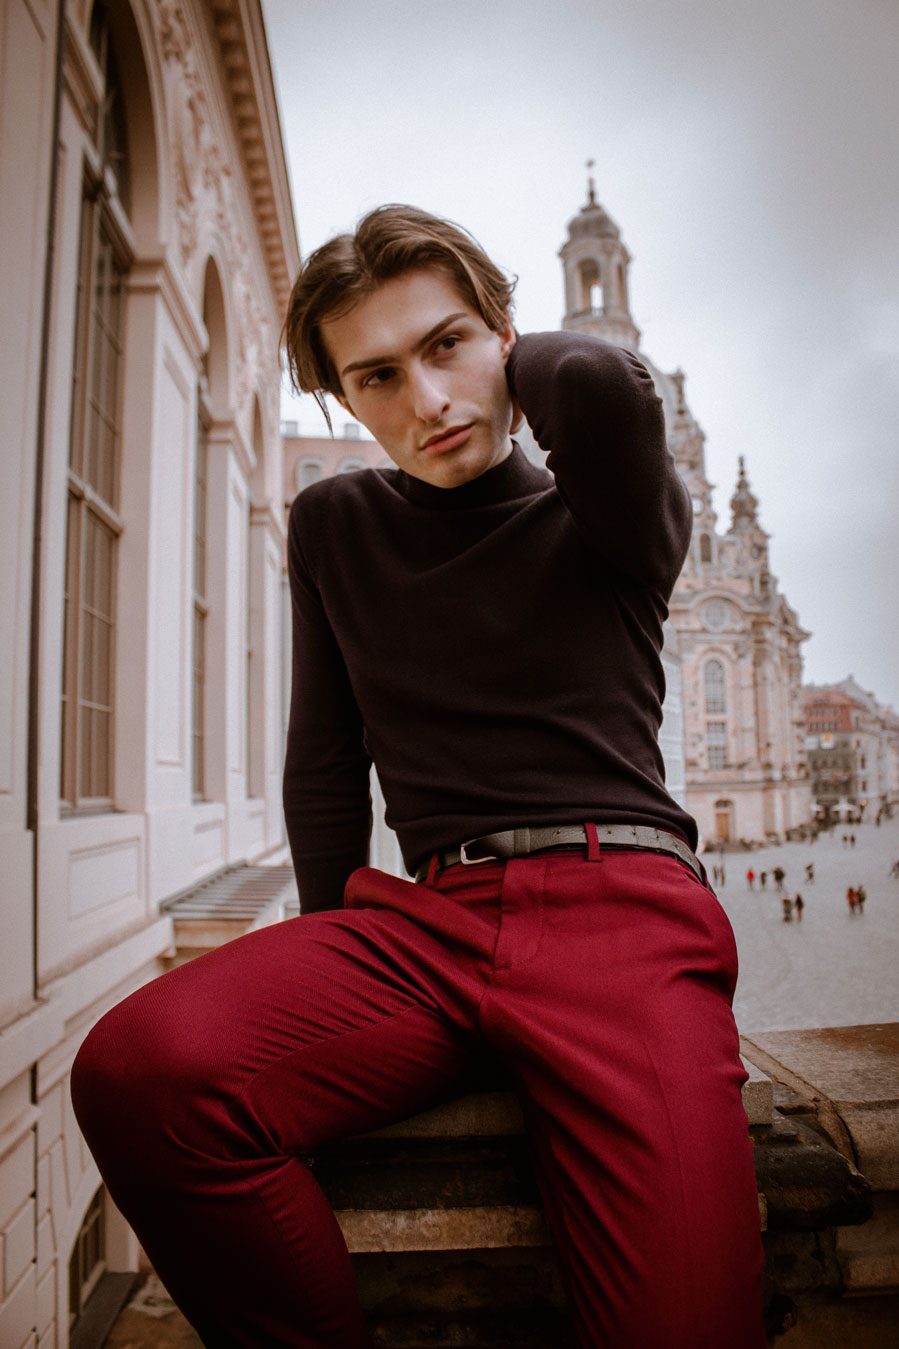 gedankenversunken sein, sich Gedanken machen | Mister Matthew alias Matthias Limmer in der Dresdner Altstadt vor der Frauenkirche | rote Hose für Männer